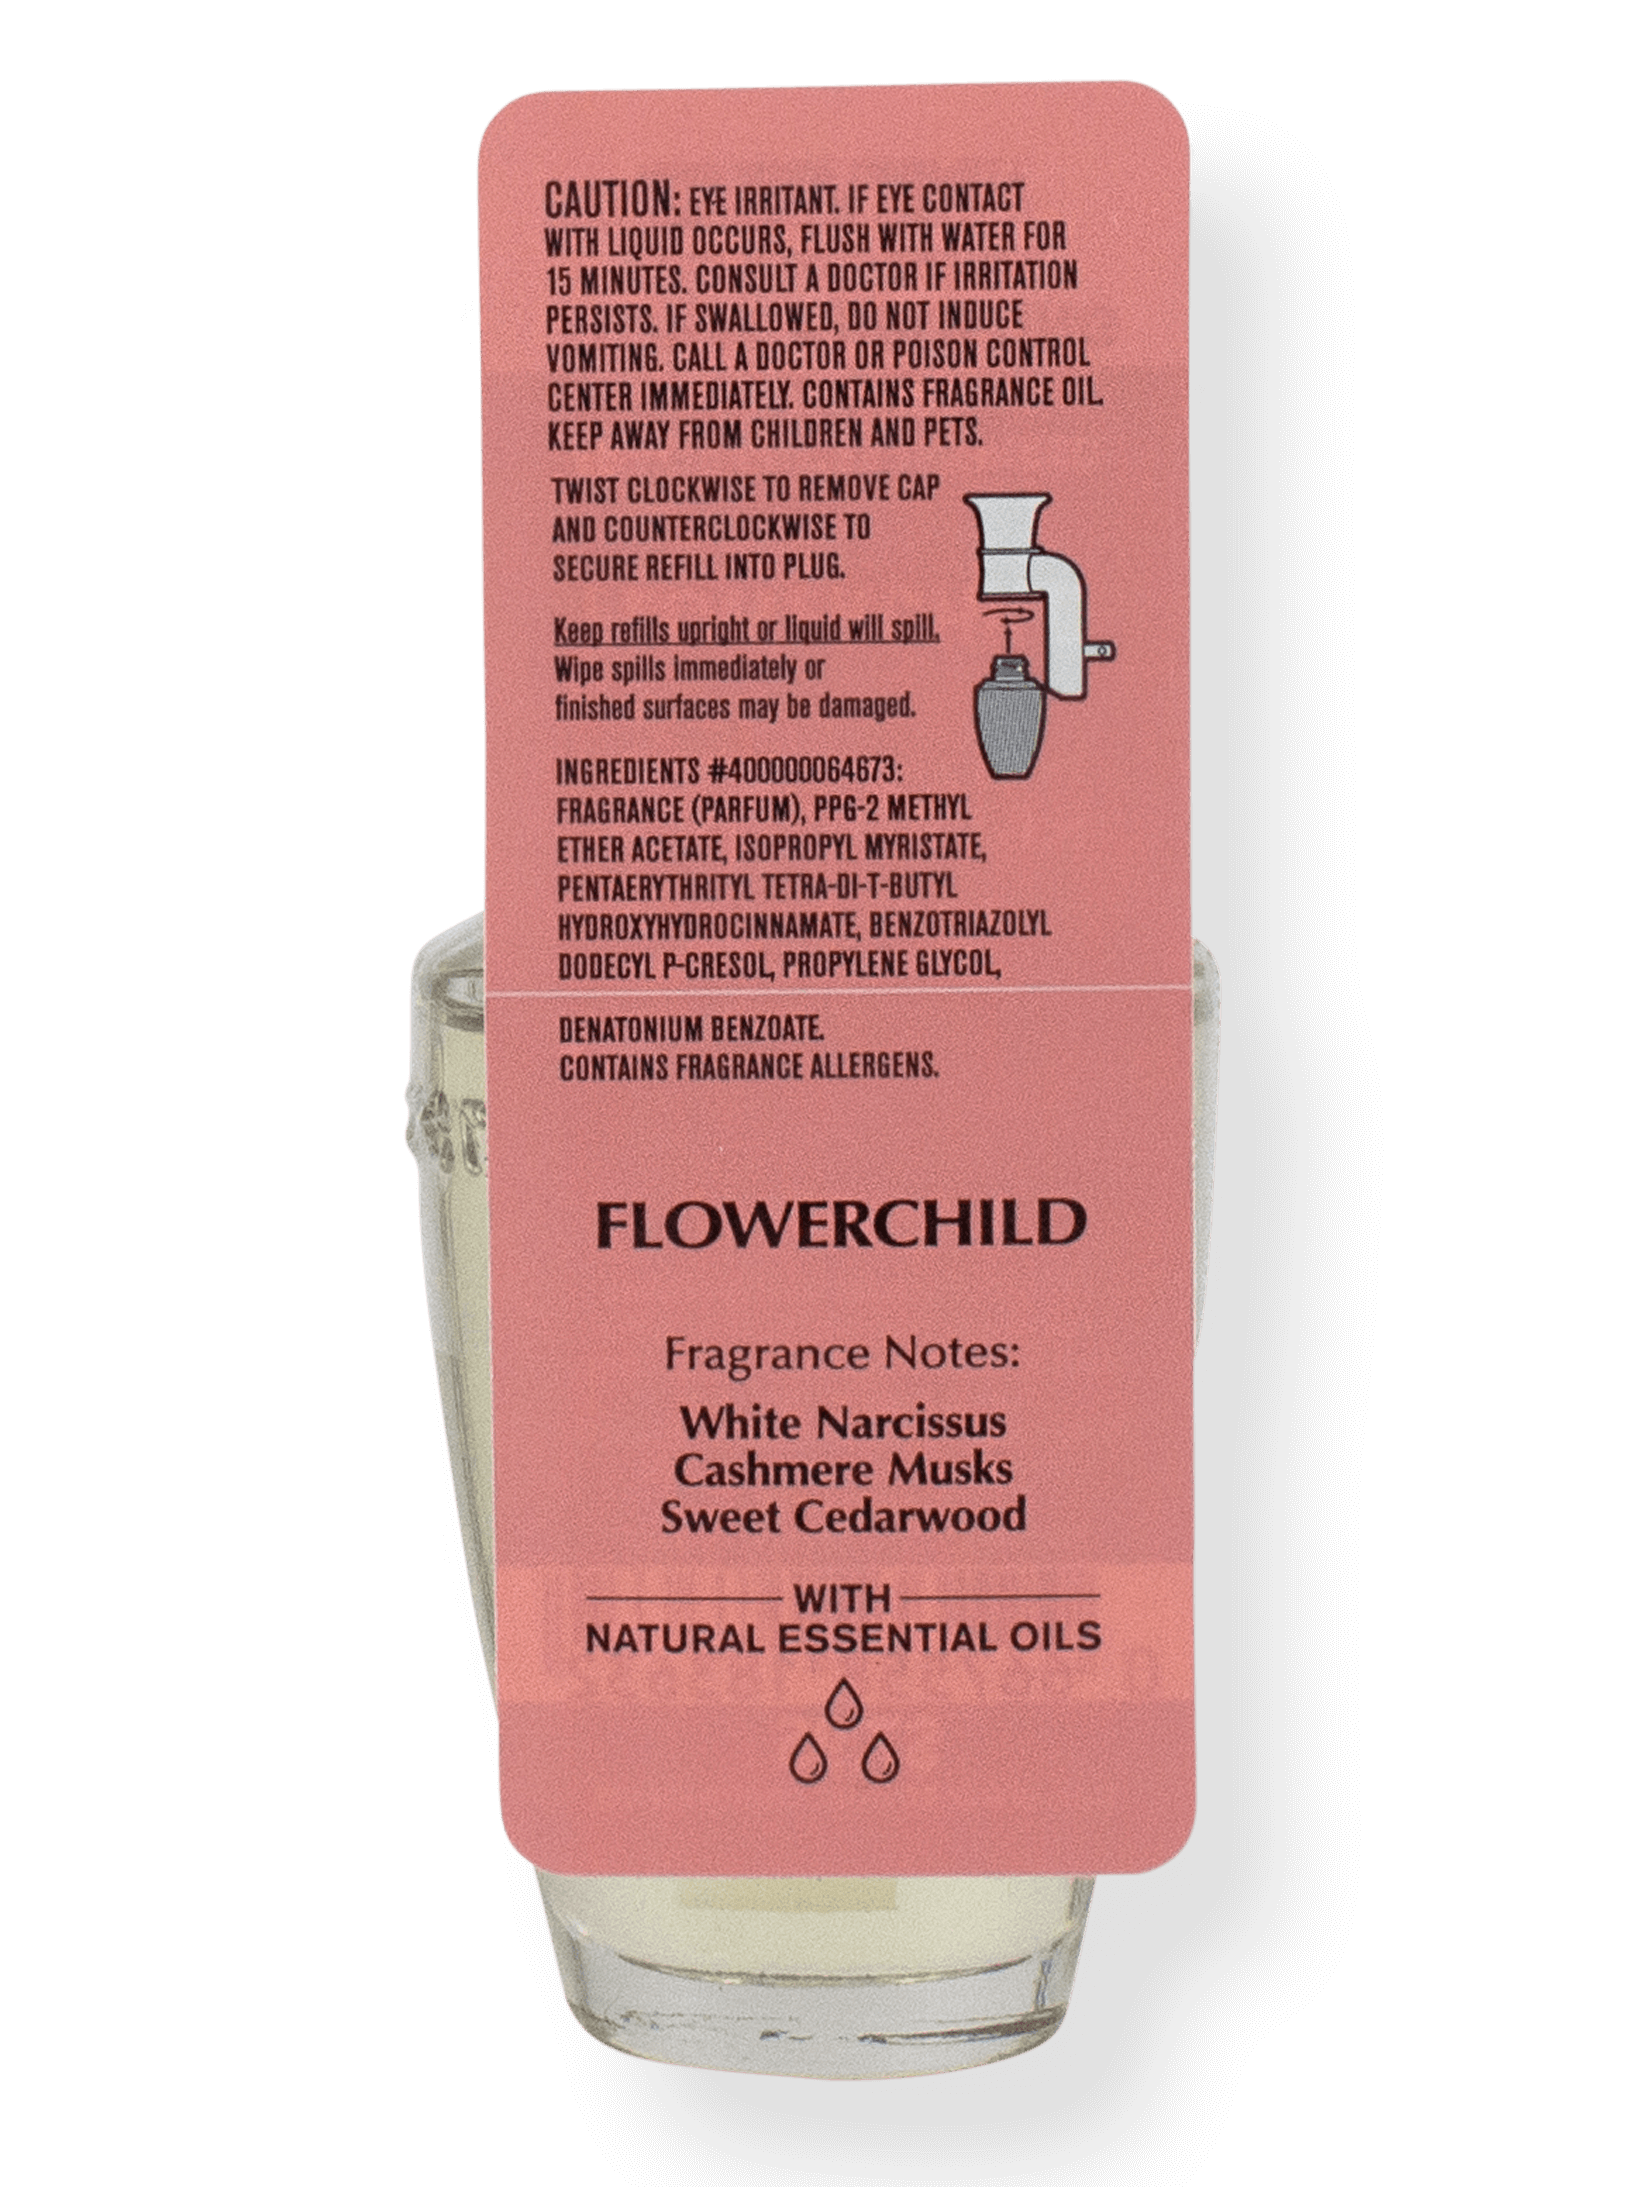 Wallflower Refill - Flowerchild - 24ml